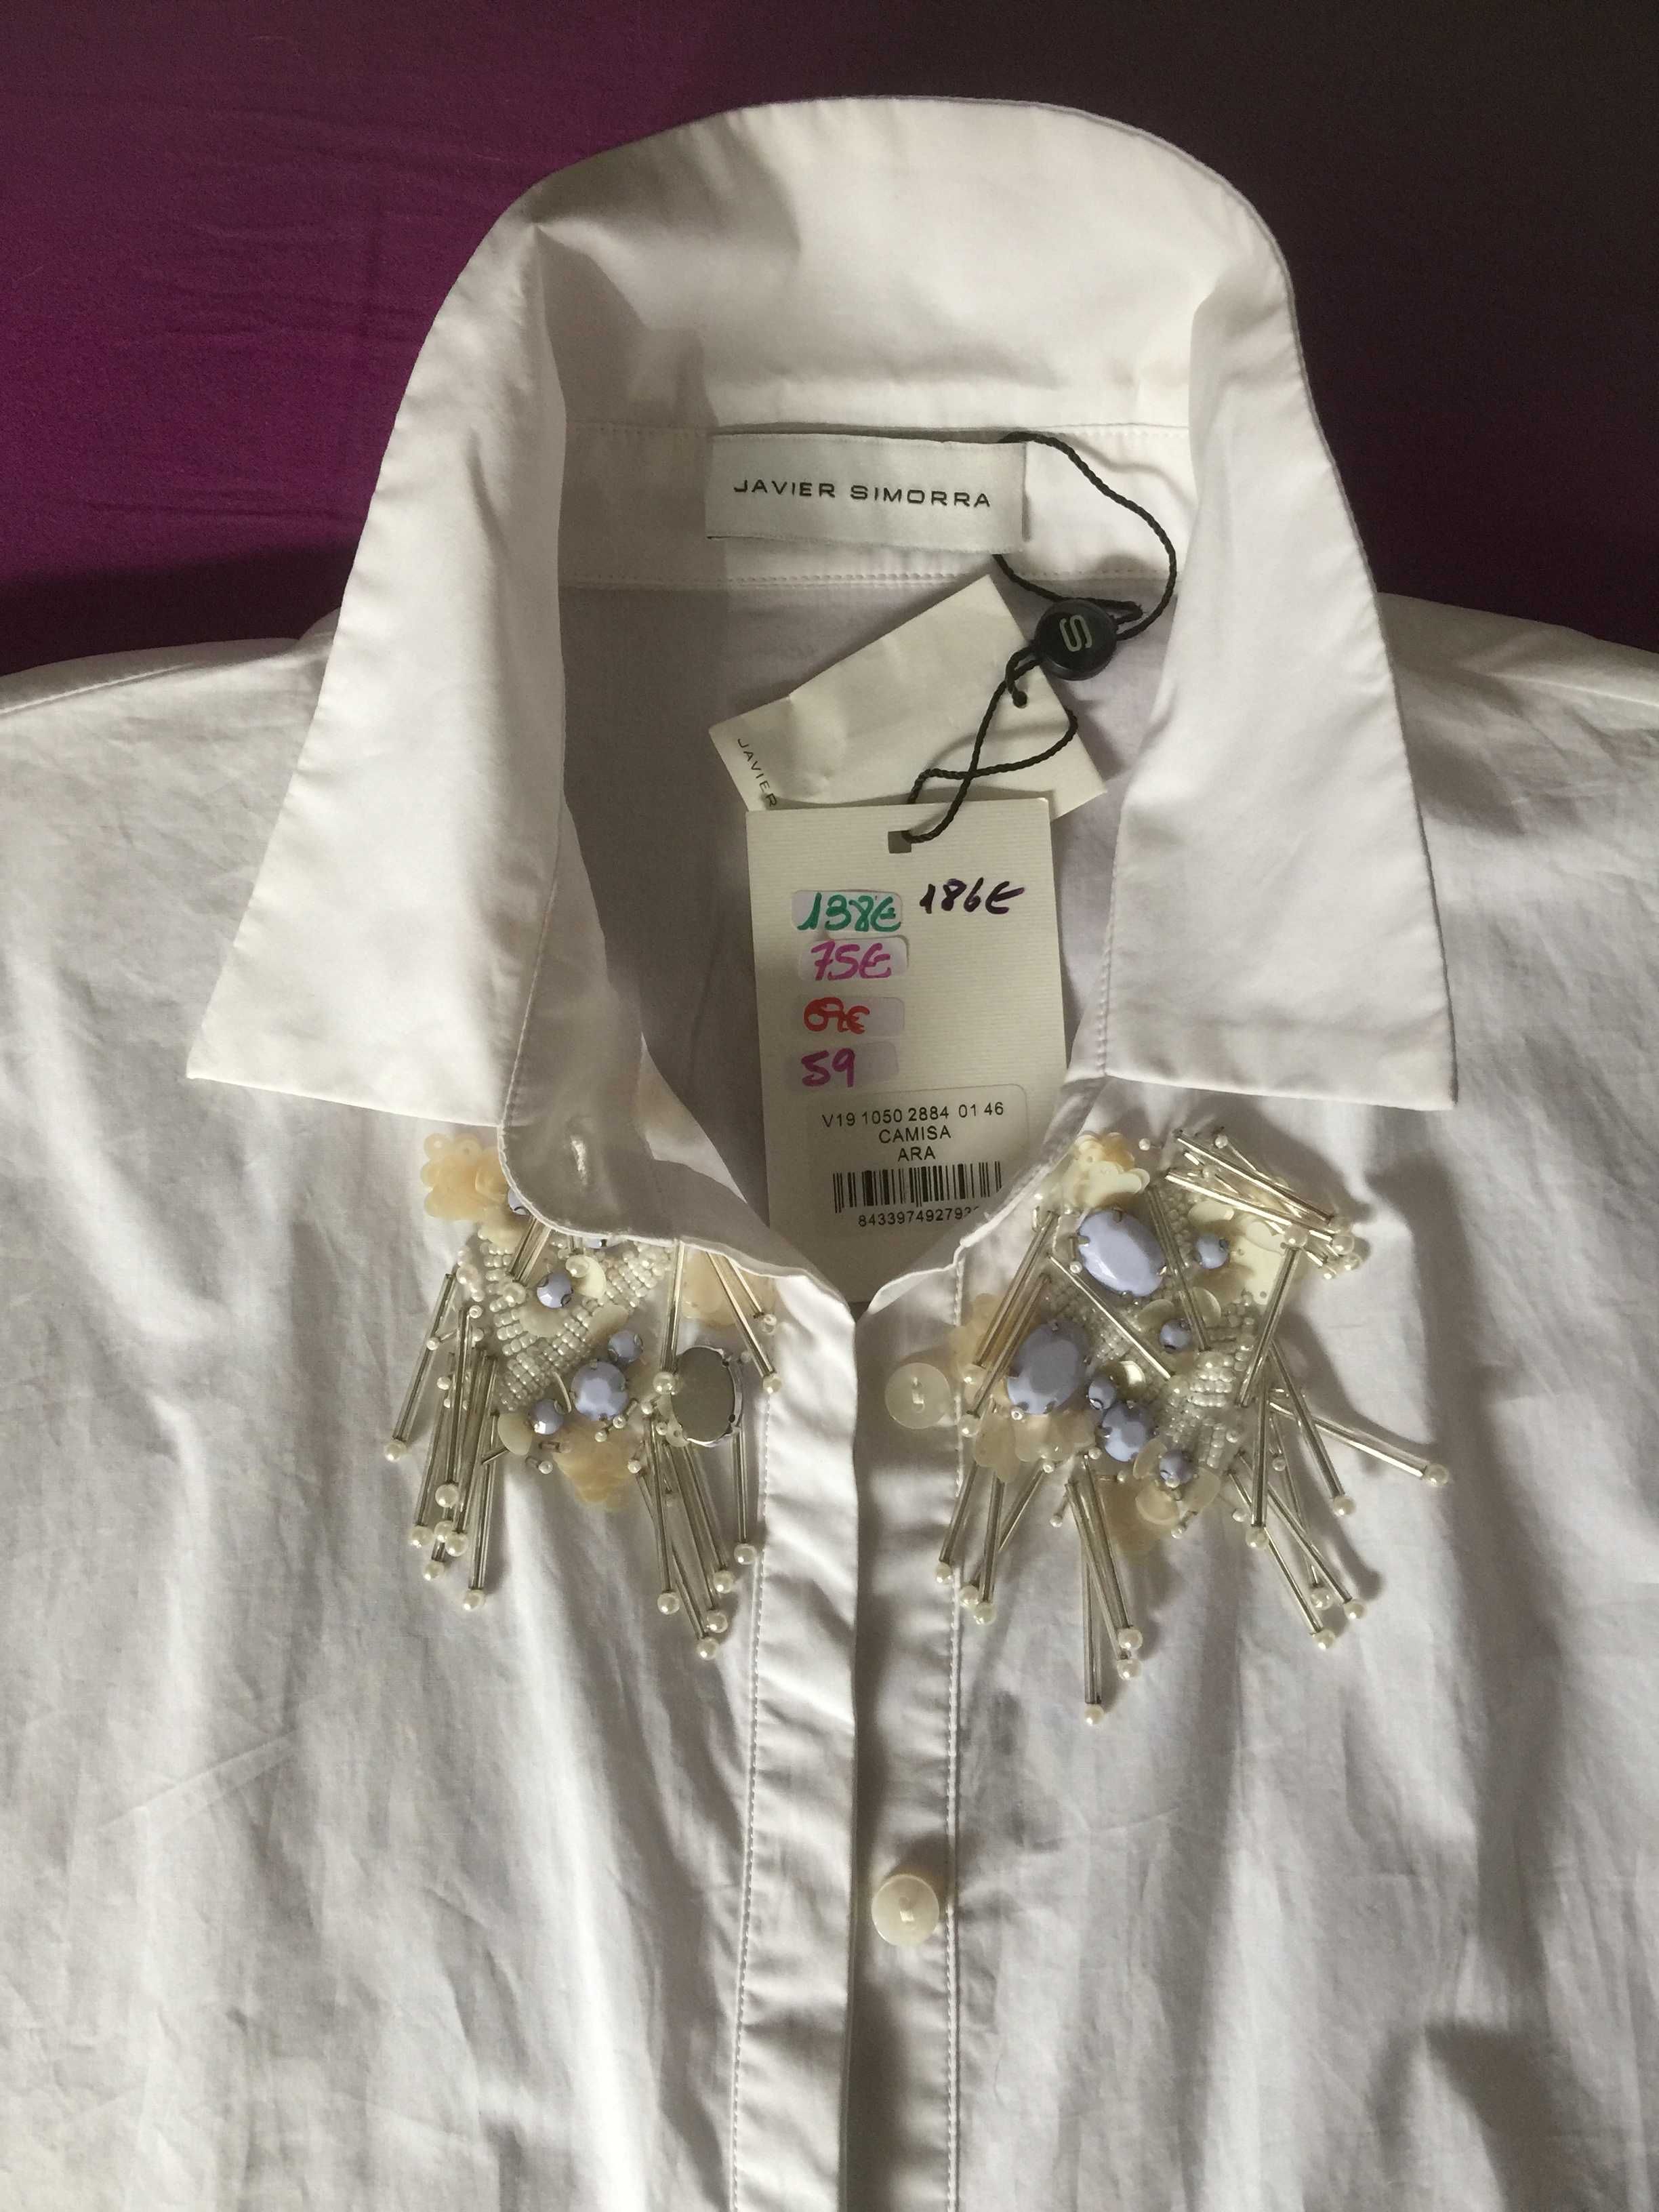 Оригинальная блузка 100% коттон бренда Javier Simorra Испания 15% цены